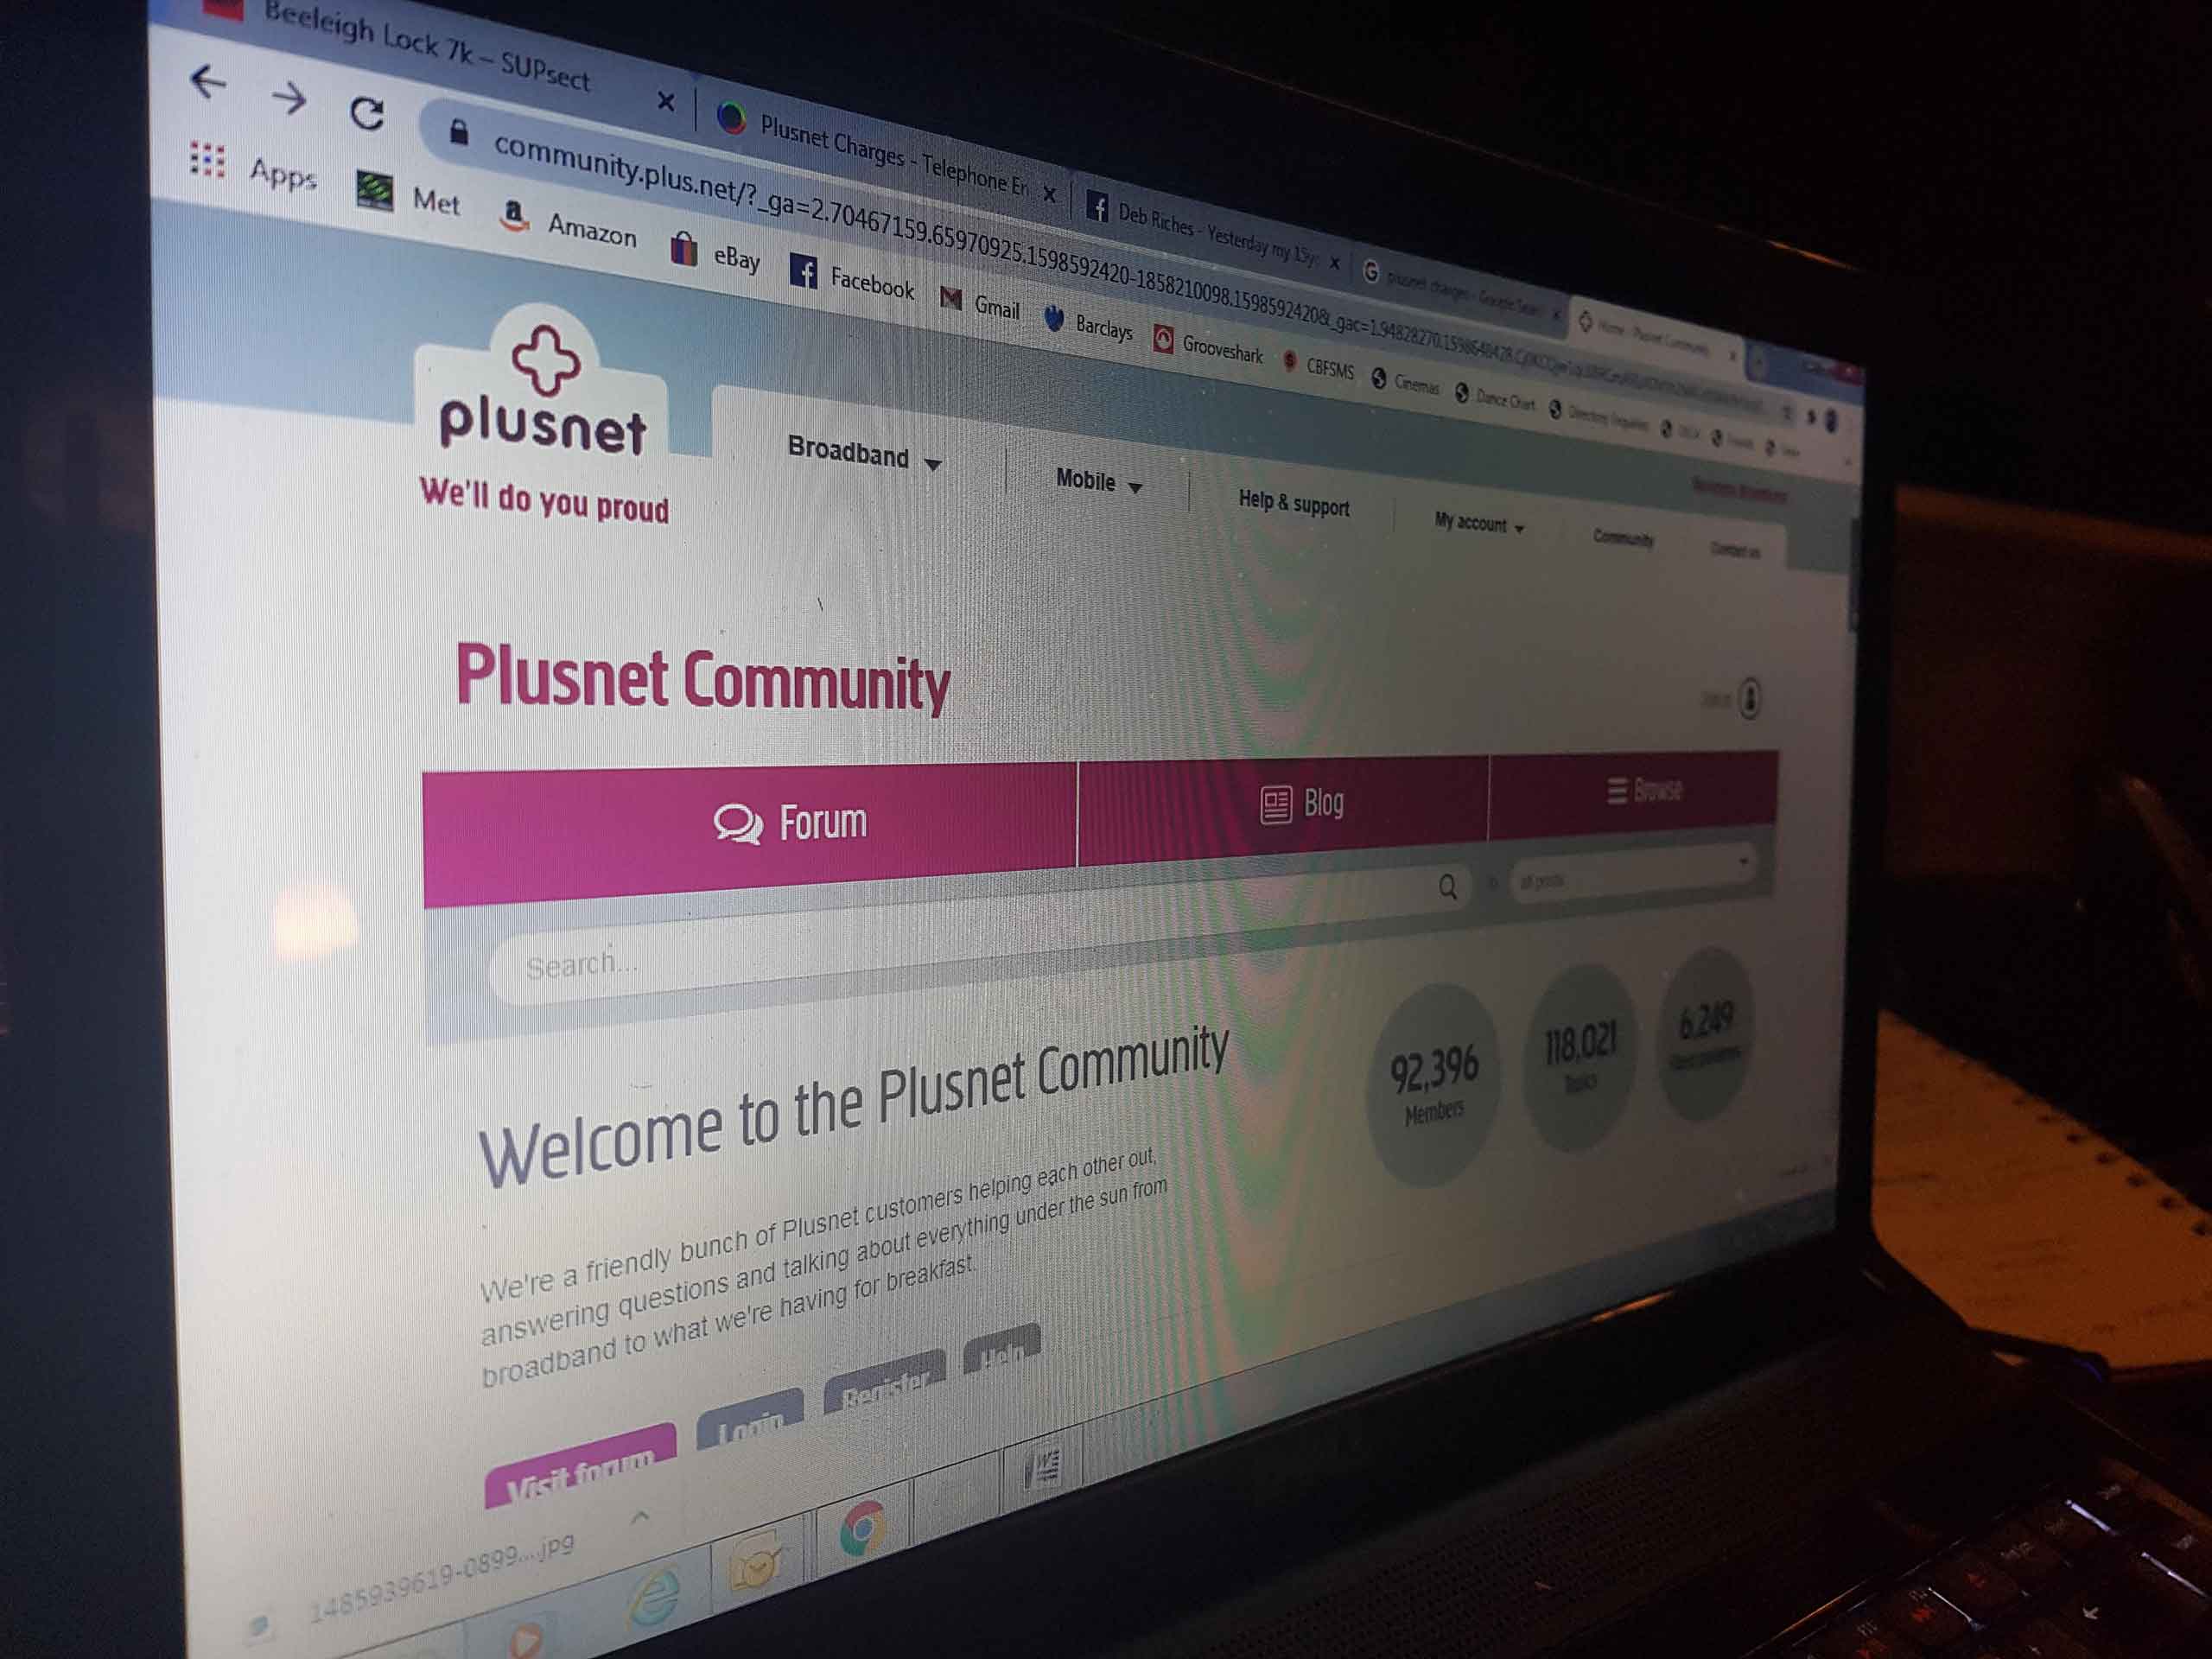 Plusnet website forum on pc screen